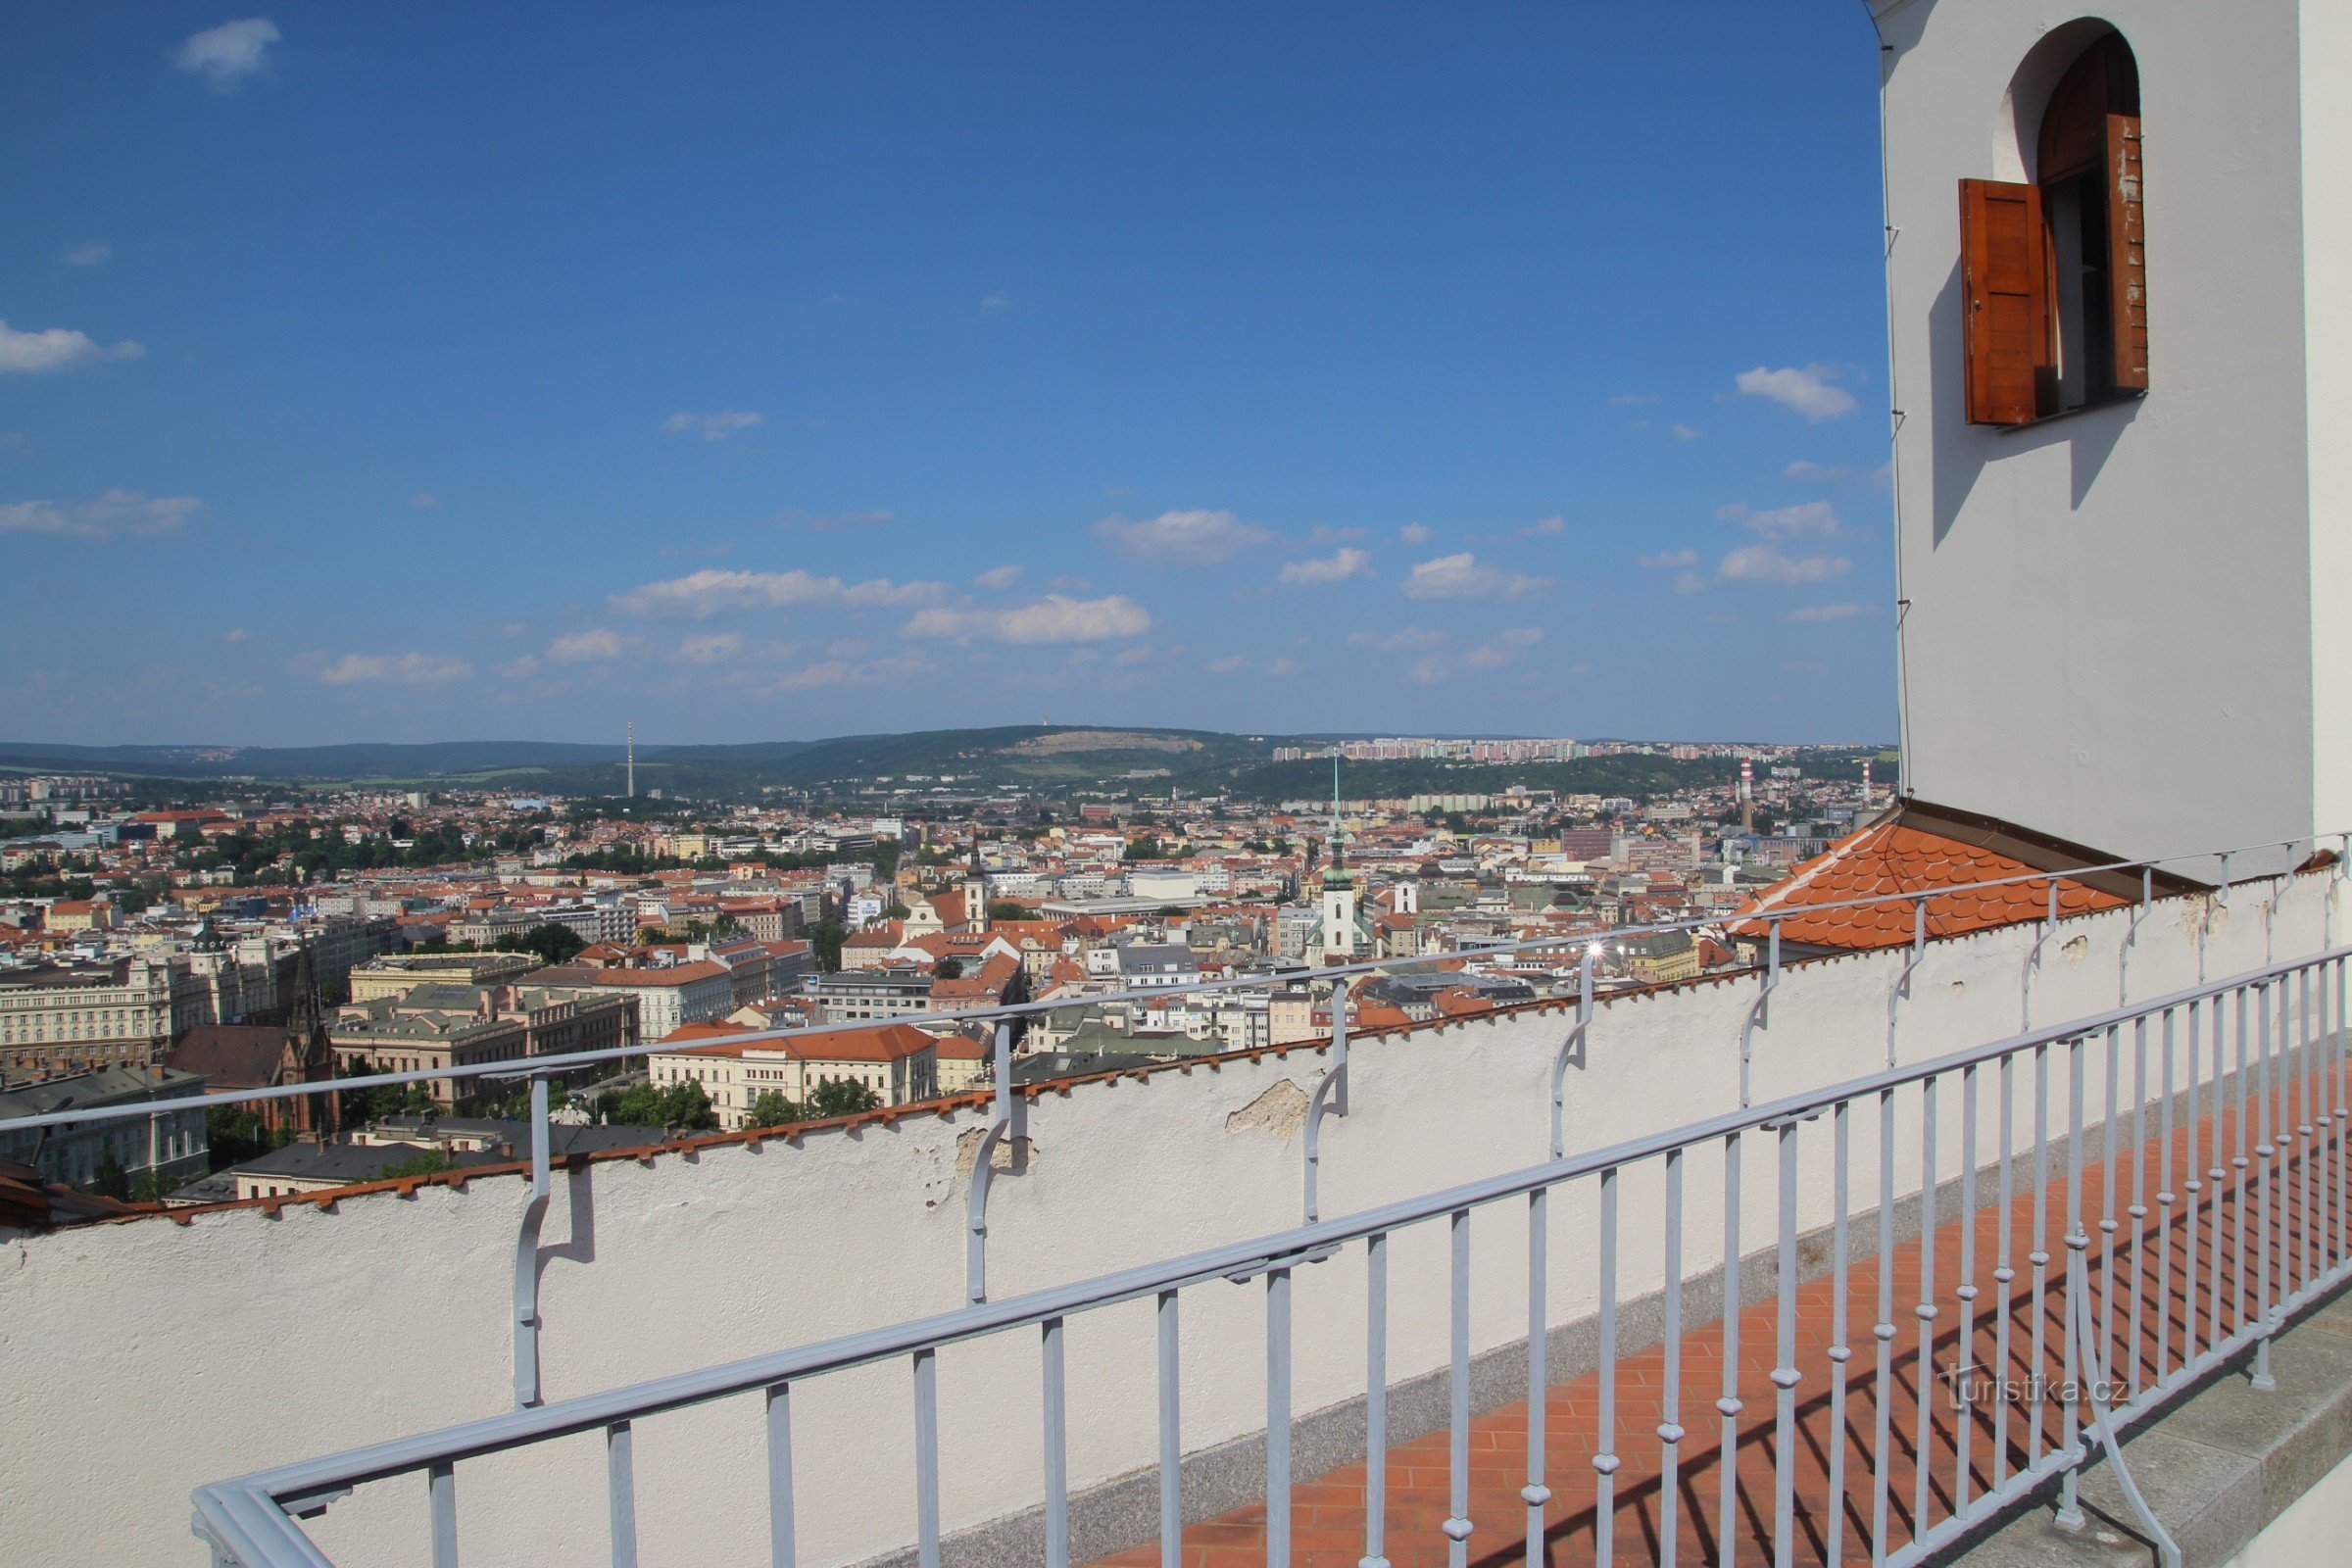 Uitzicht op Brno vanaf het uitkijkterras